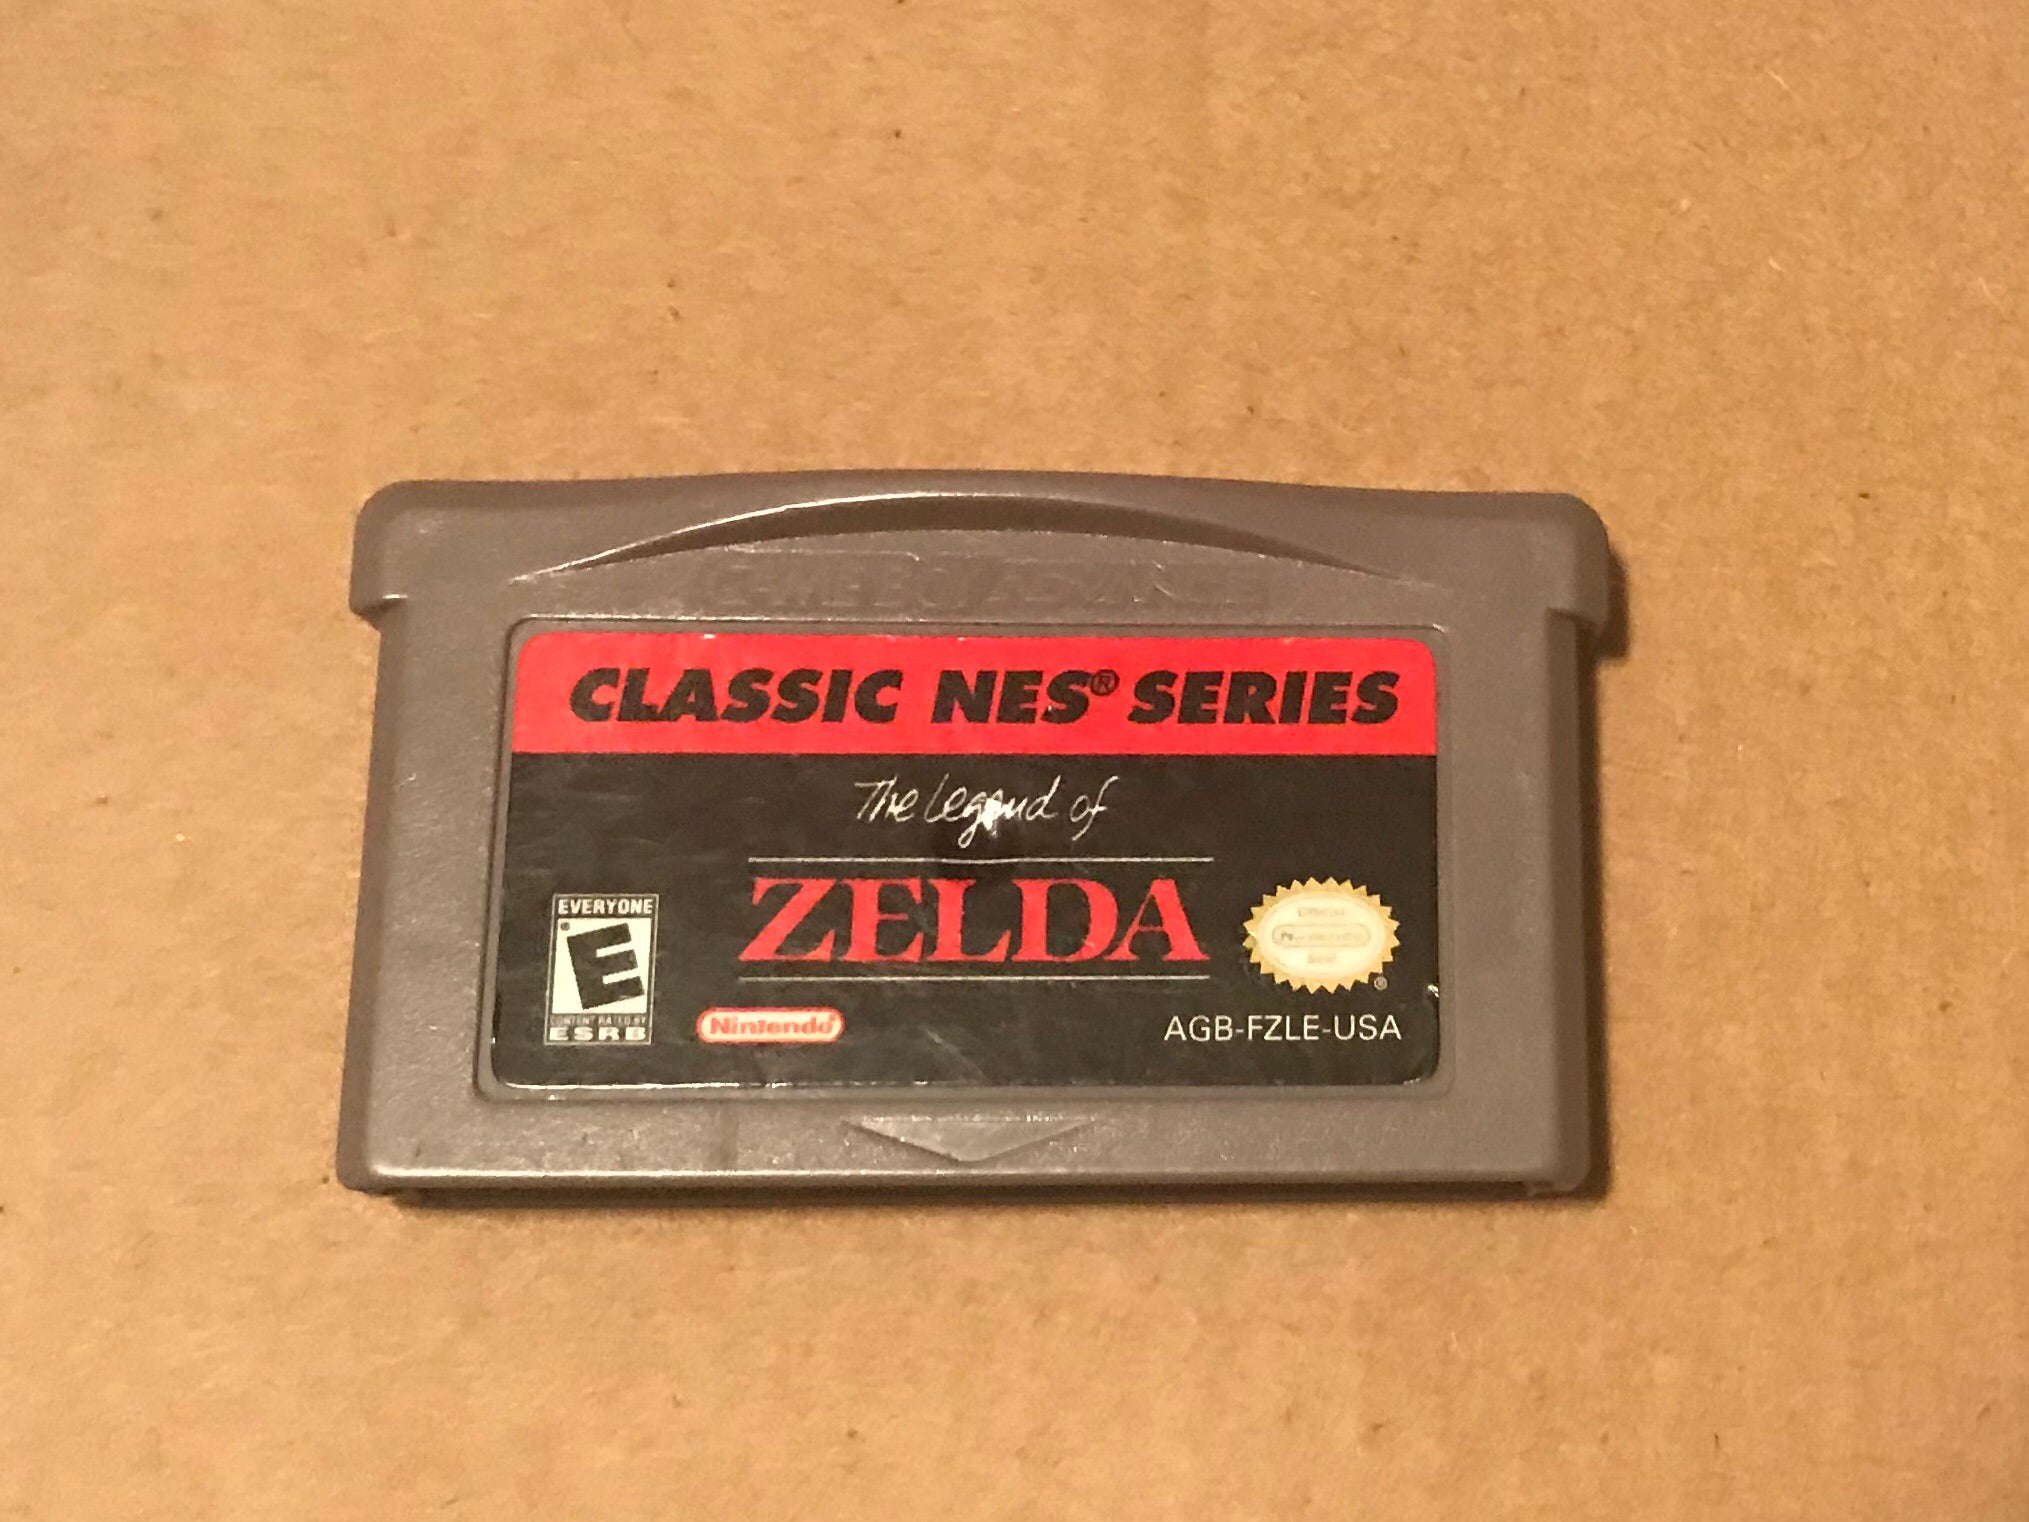 The Legend of Zelda: Classic NES Series